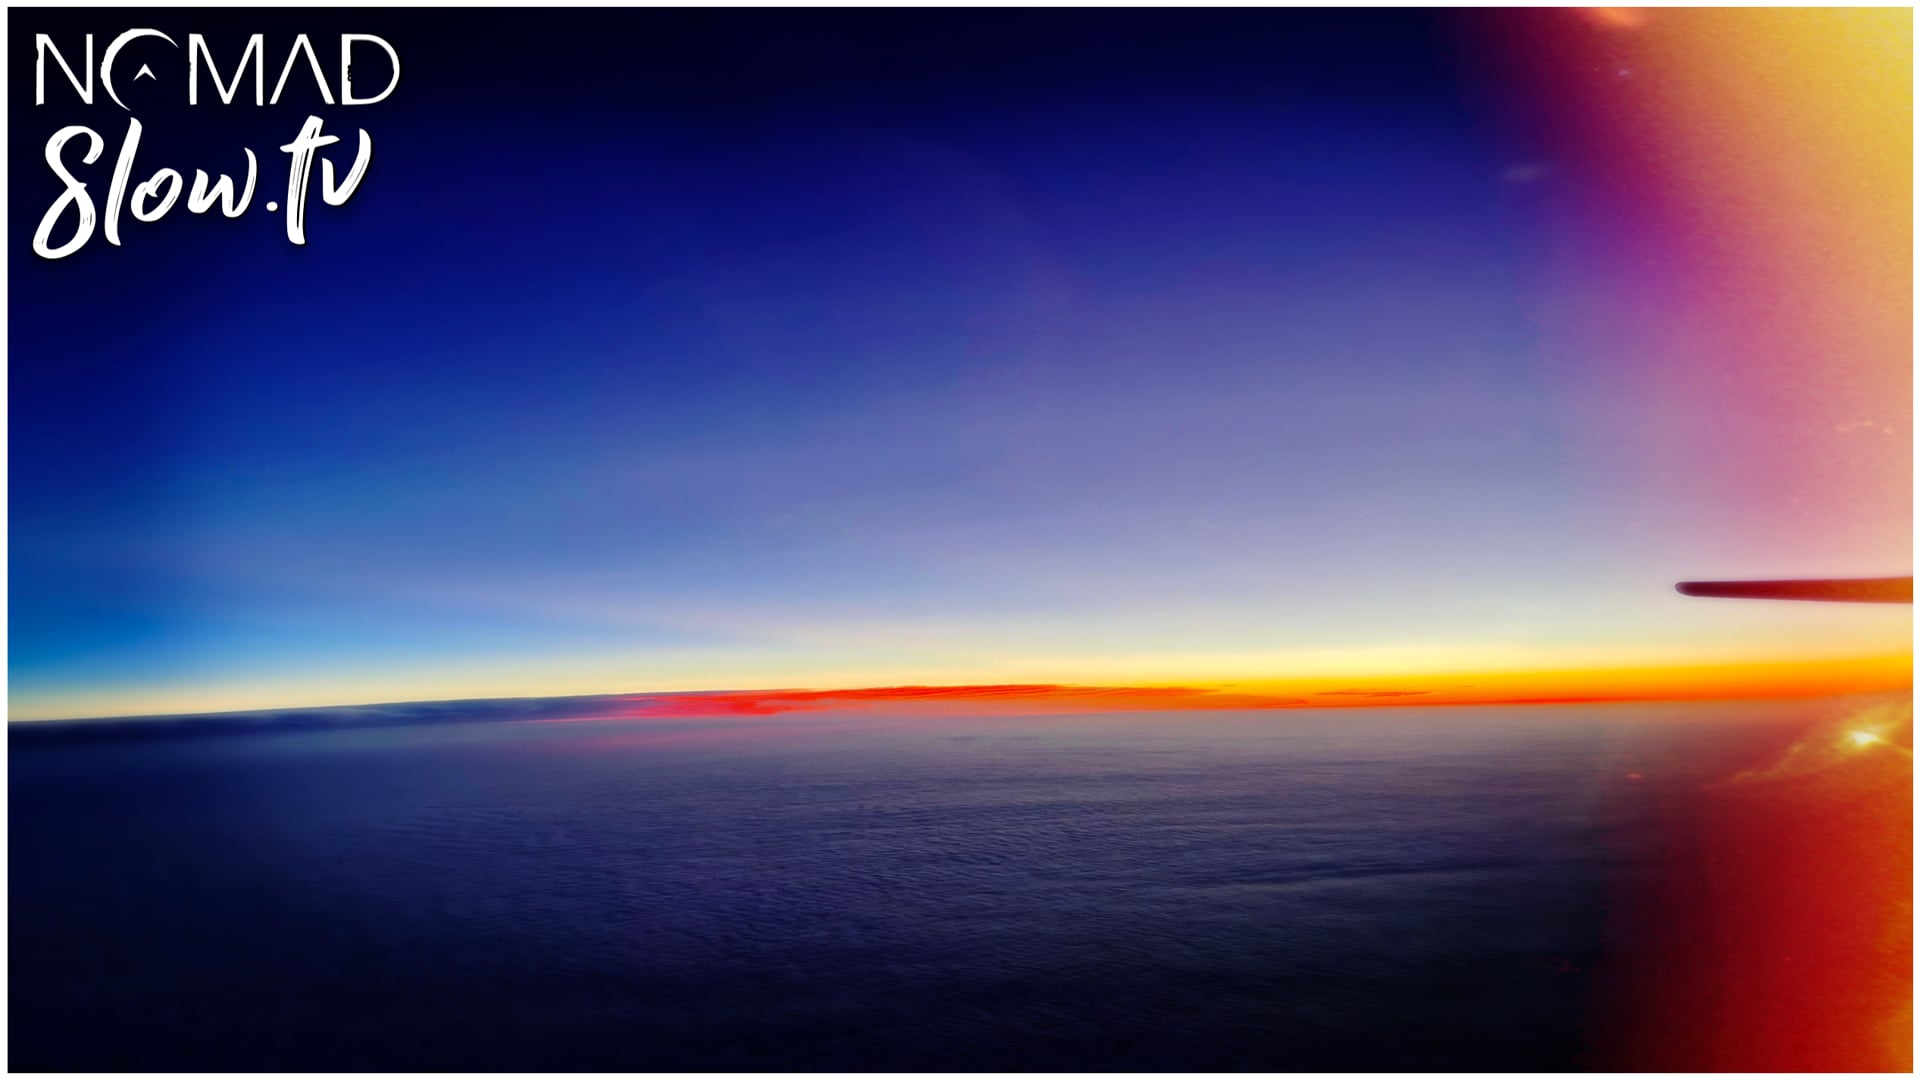 Bora Bora 19 - Last Sunset